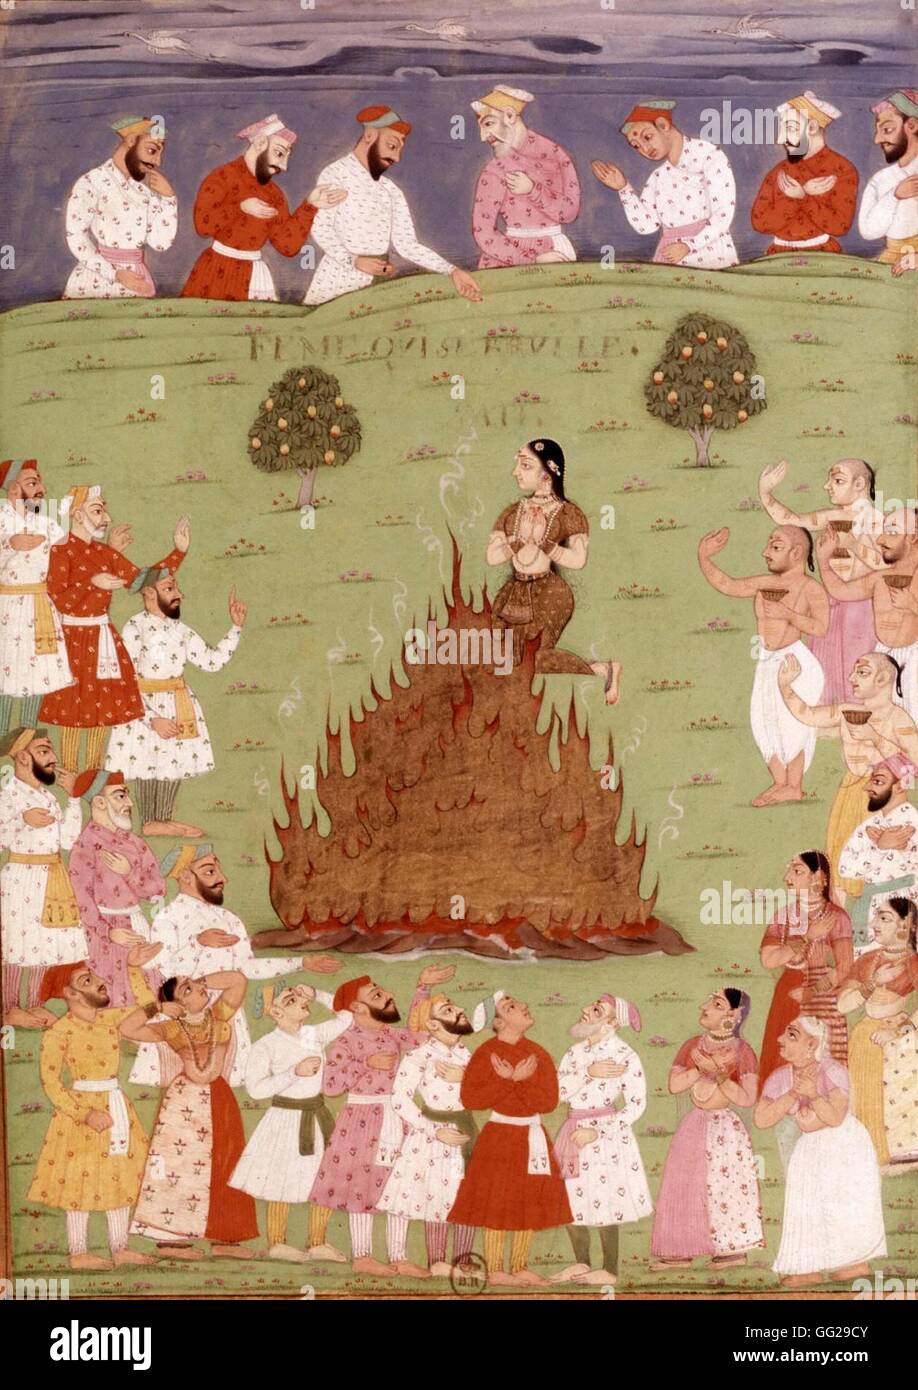 Indische Miniatur. Der Radja Widown lebendig auf dem Scheiterhaufen verbrannt. 16. Jahrhundert Indien Paris. Bibliothèque Nationale Stockfoto